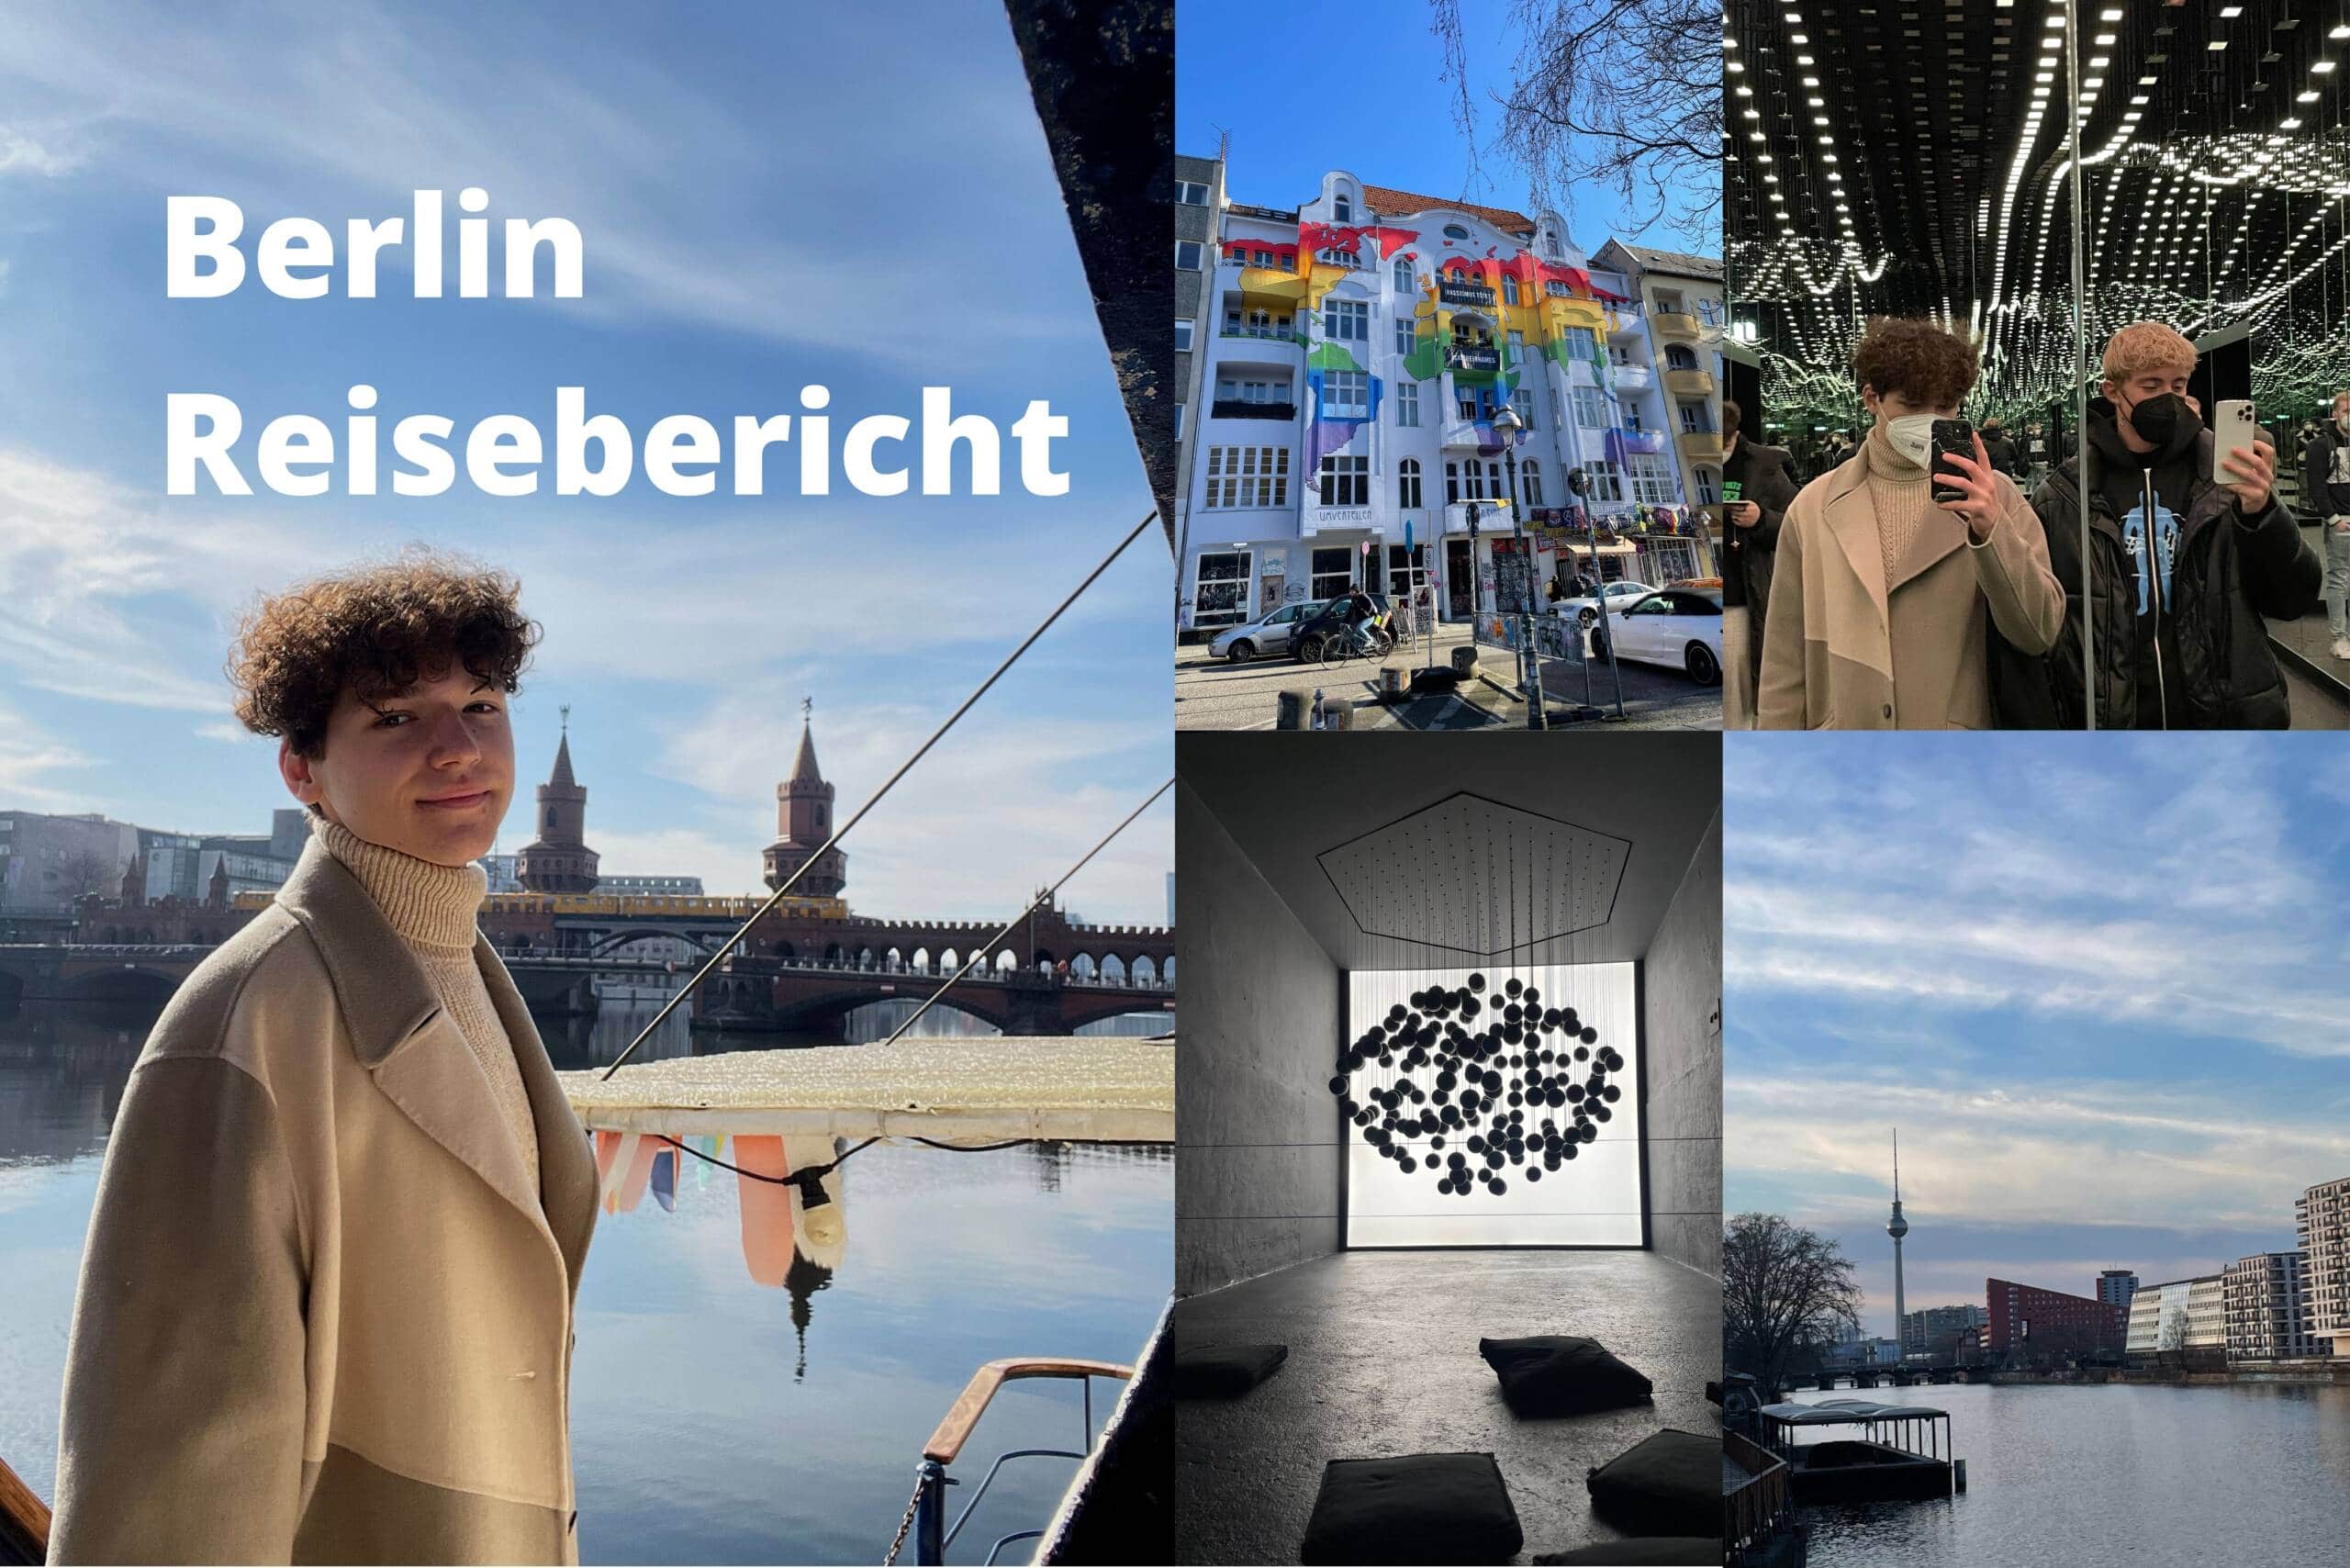 Berlin Reisebericht Jugendliche Reisen allein in Berlin